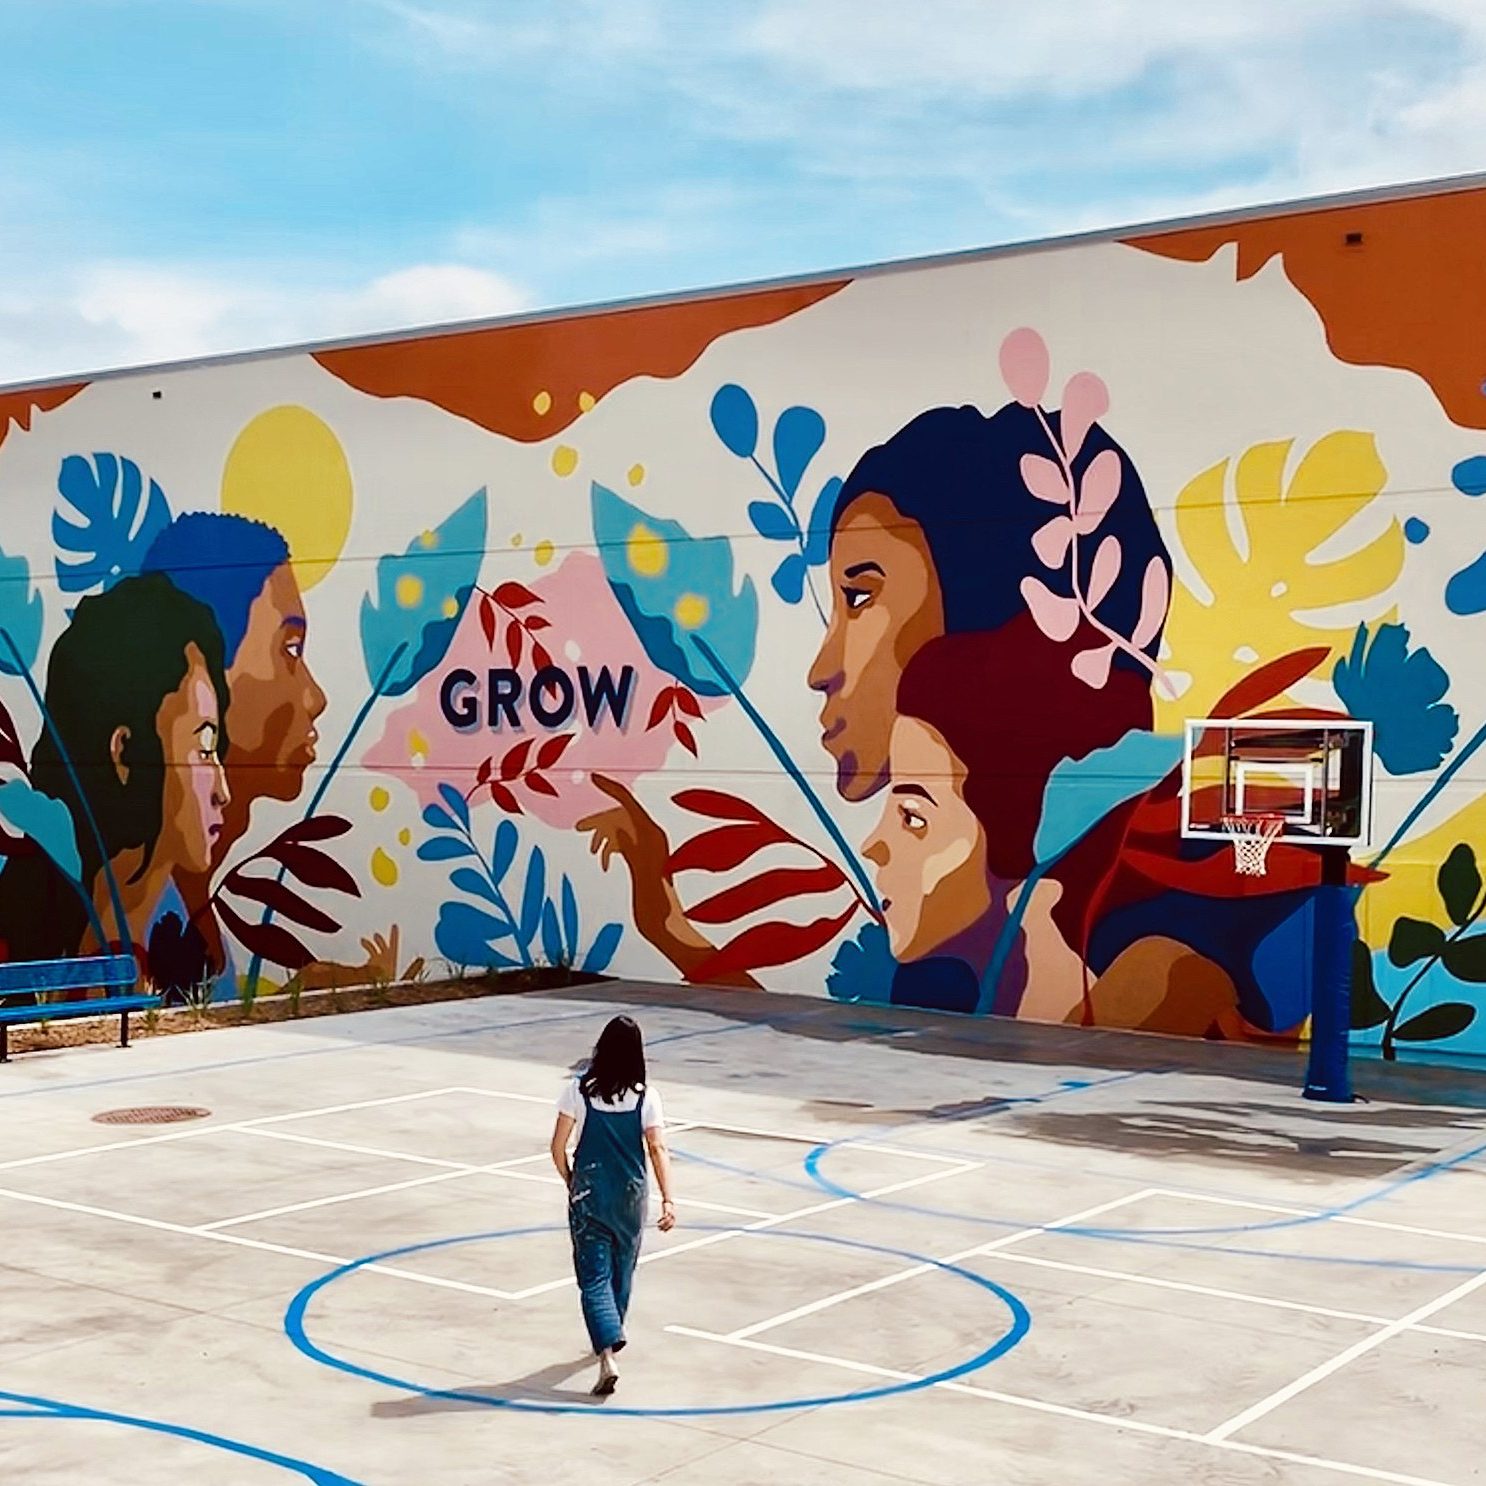 Amanda and her community mural